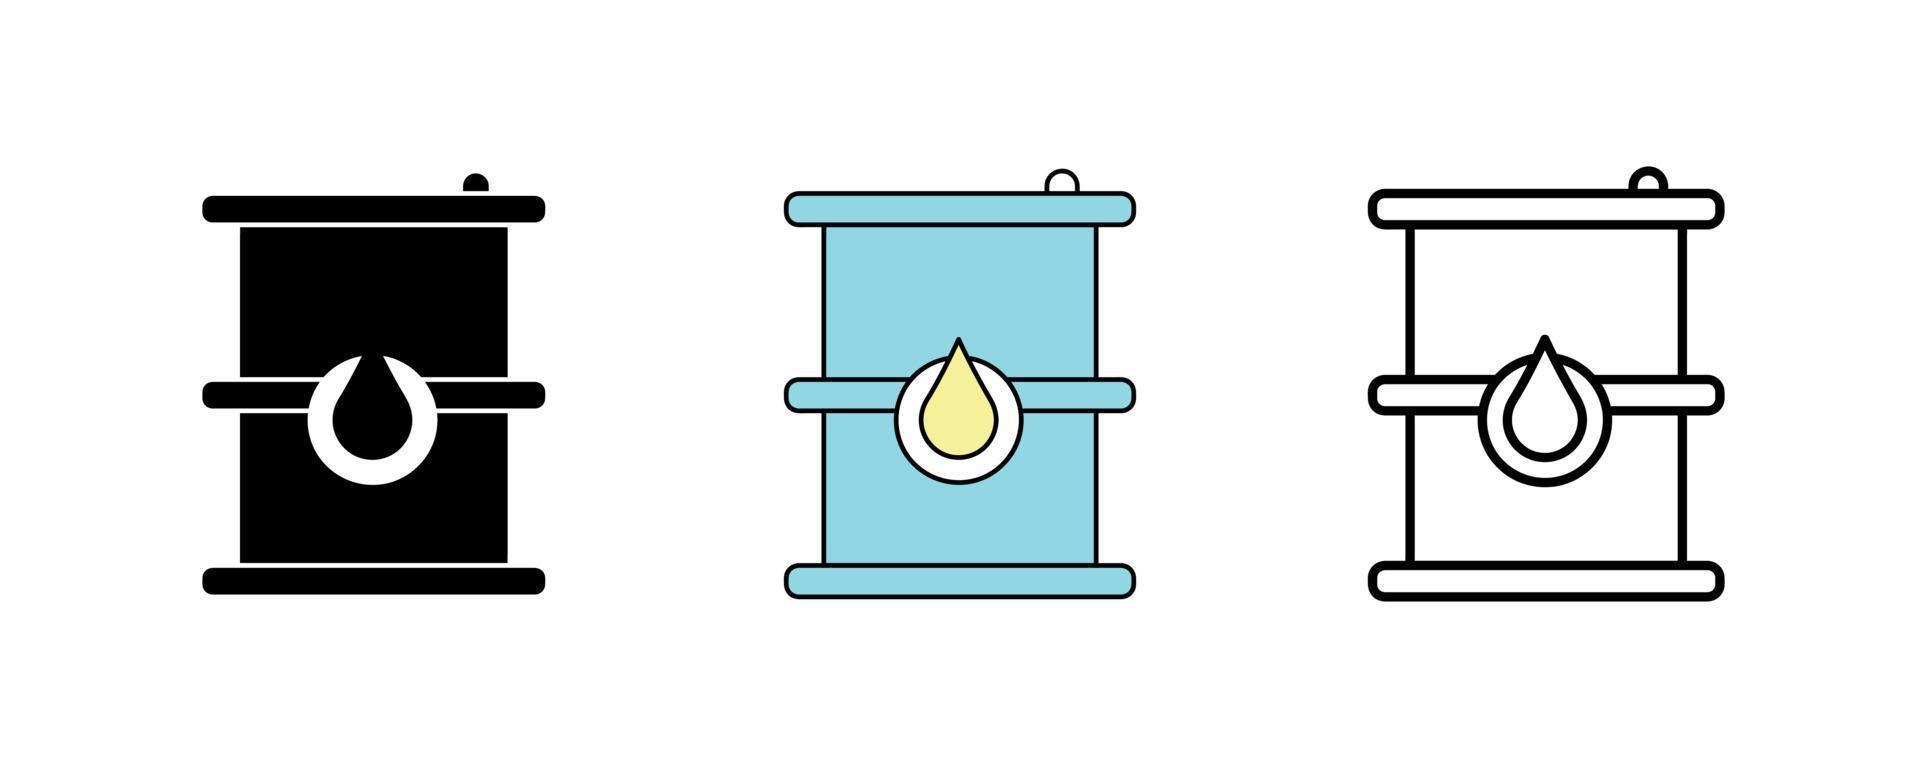 conception d'icône de baril de pétrole. icône de baril de pétrole en silhouette, colorée et linéaire. baril icône ligne illustration vectorielle isolée sur un fond propre pour la conception du logo de votre application mobile Web. vecteur